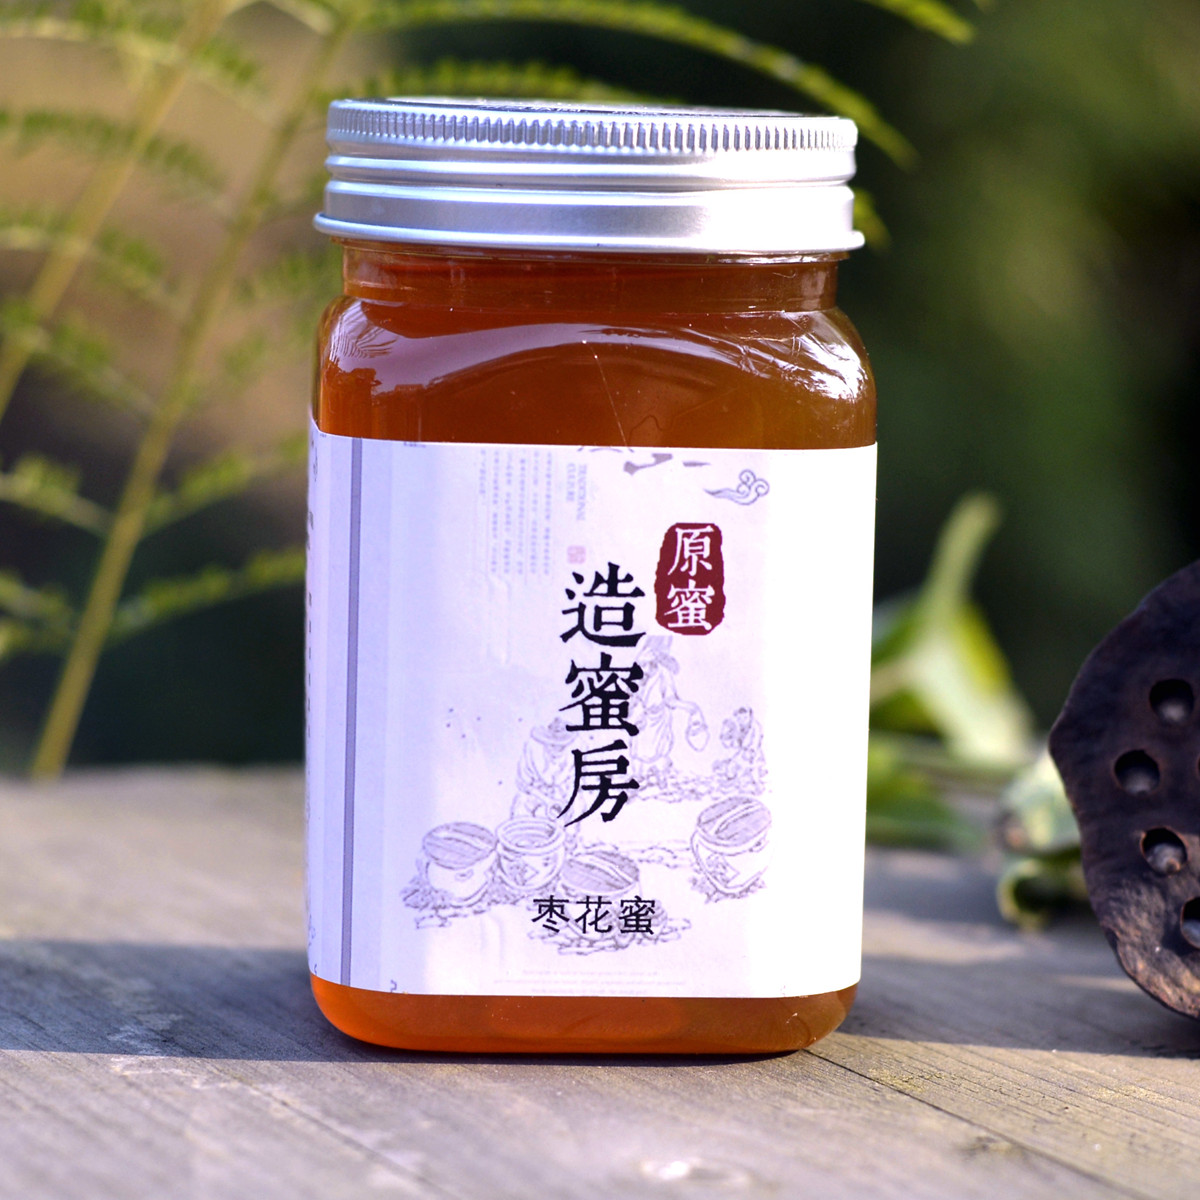 【造蜜房】纯正原生蜂蜜 全天然封盖成熟蜜 枣花蜜 500克